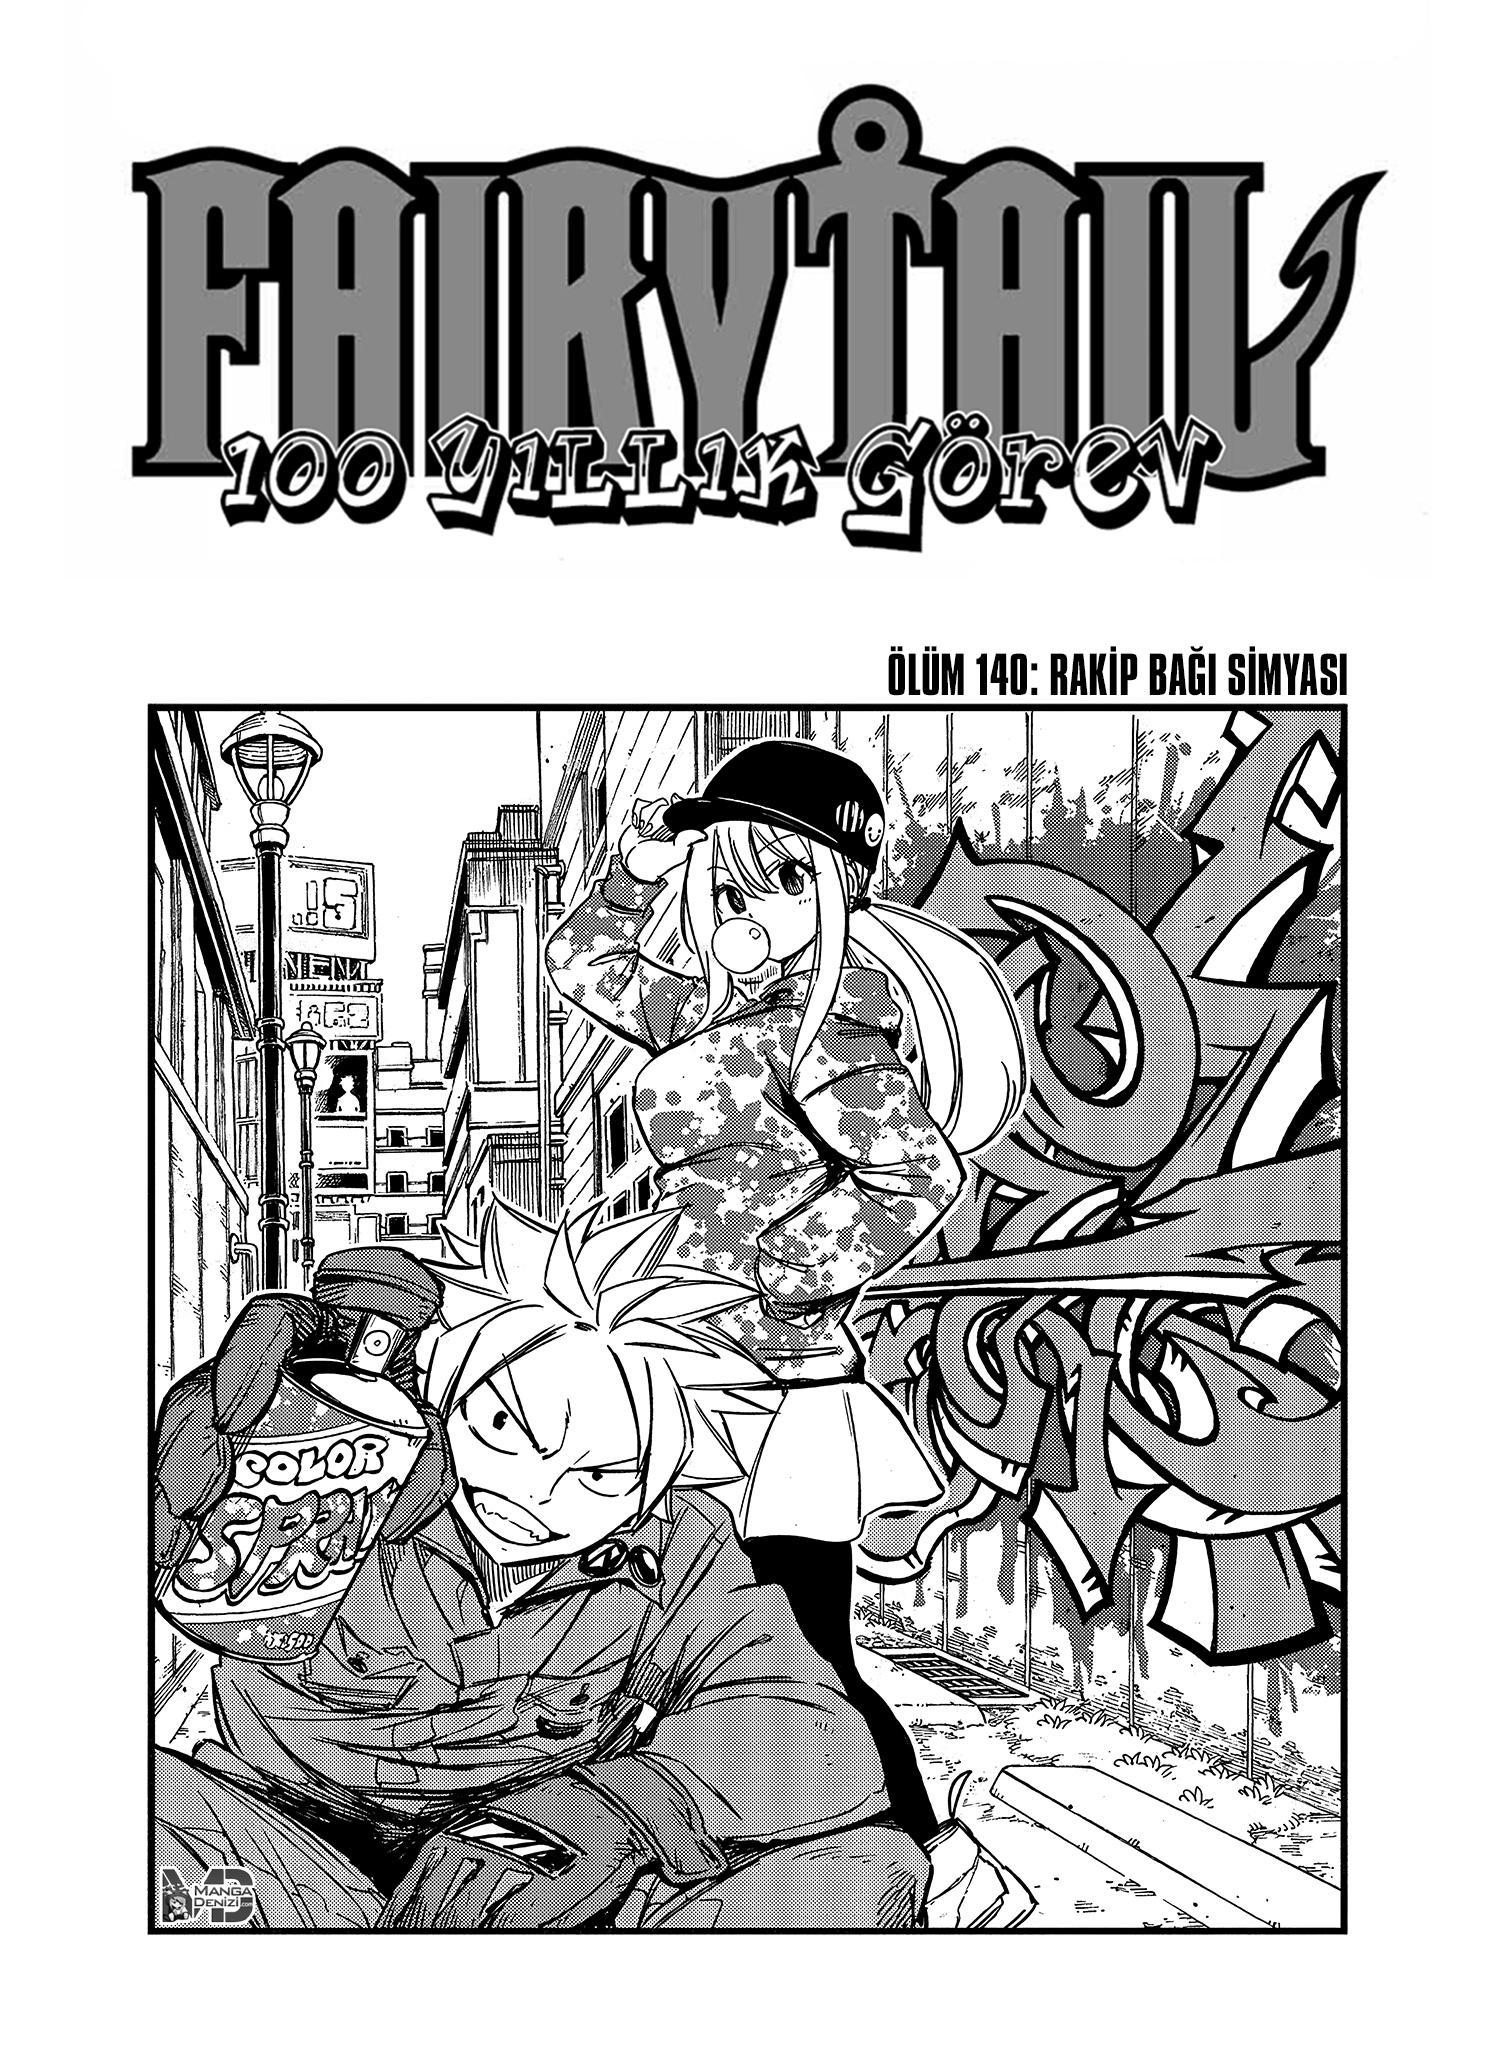 Fairy Tail: 100 Years Quest mangasının 140 bölümünün 2. sayfasını okuyorsunuz.